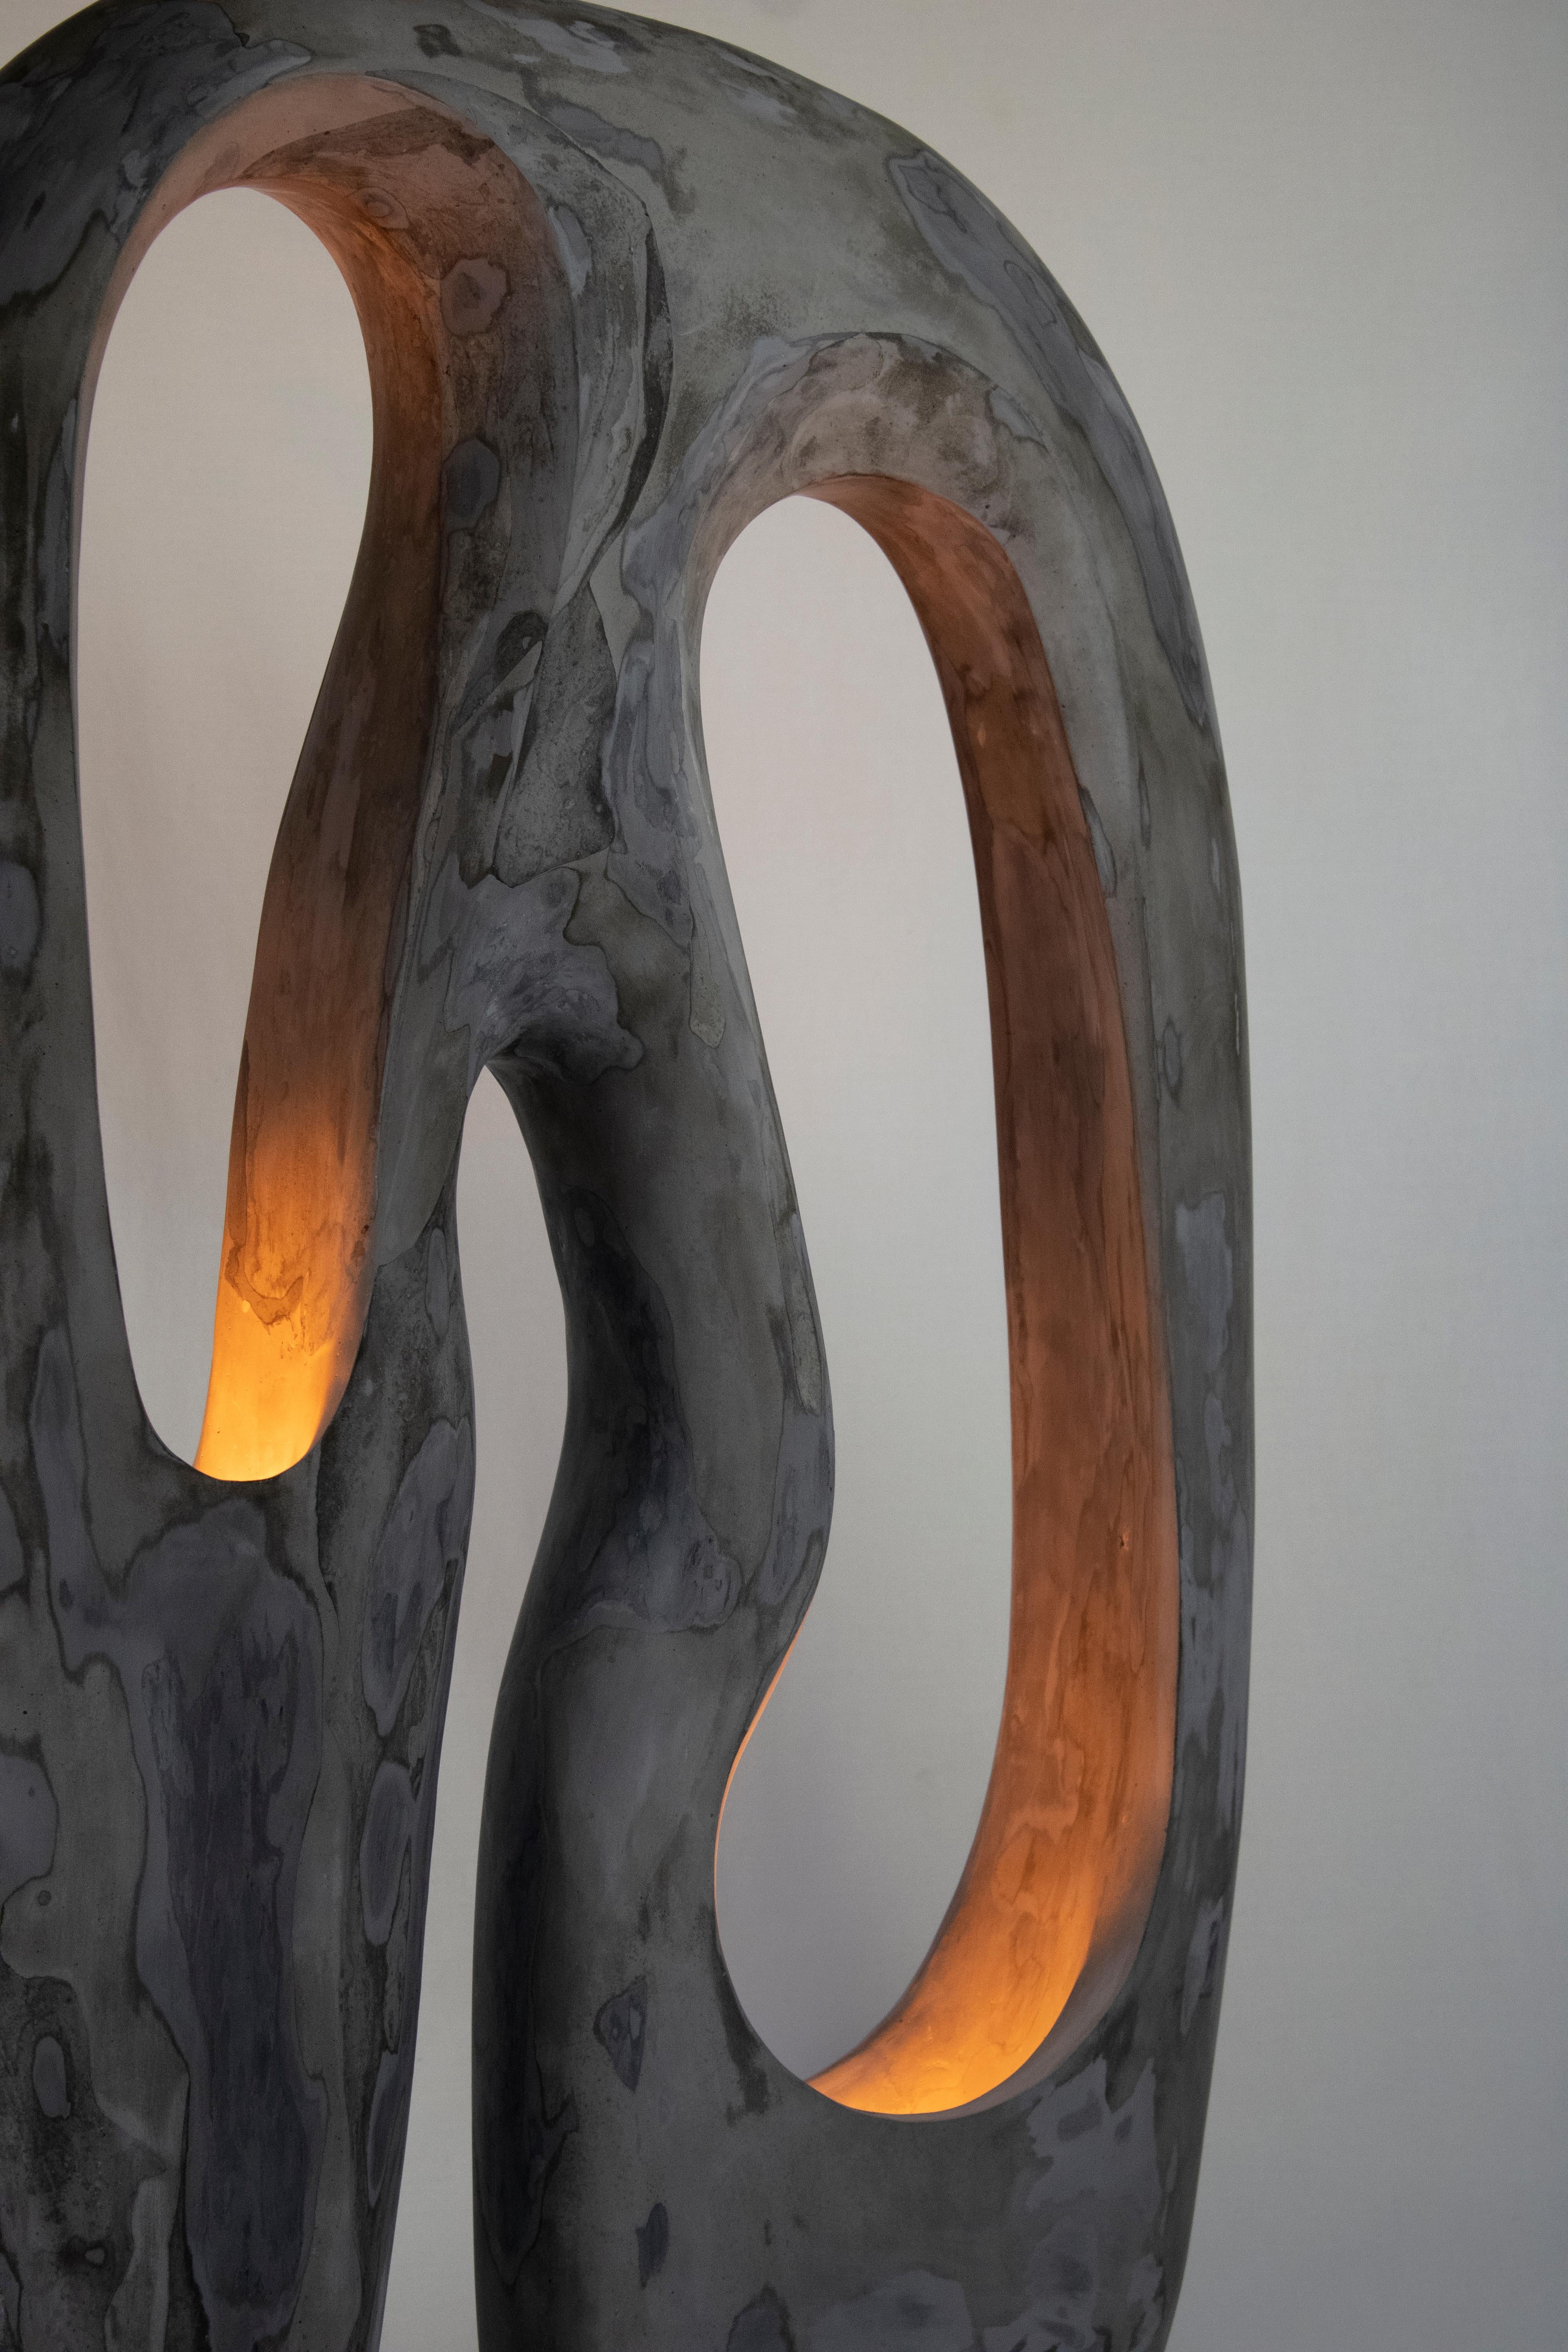 La lampe Longing est une lampe sculpturale contemporaine en gypse, fabriquée à la main, qui fait partie de la collection Living Forms. La lampe est coulée dans du gypse et sculptée à la main. La lampe Longing se distingue par un mélange étonnant de